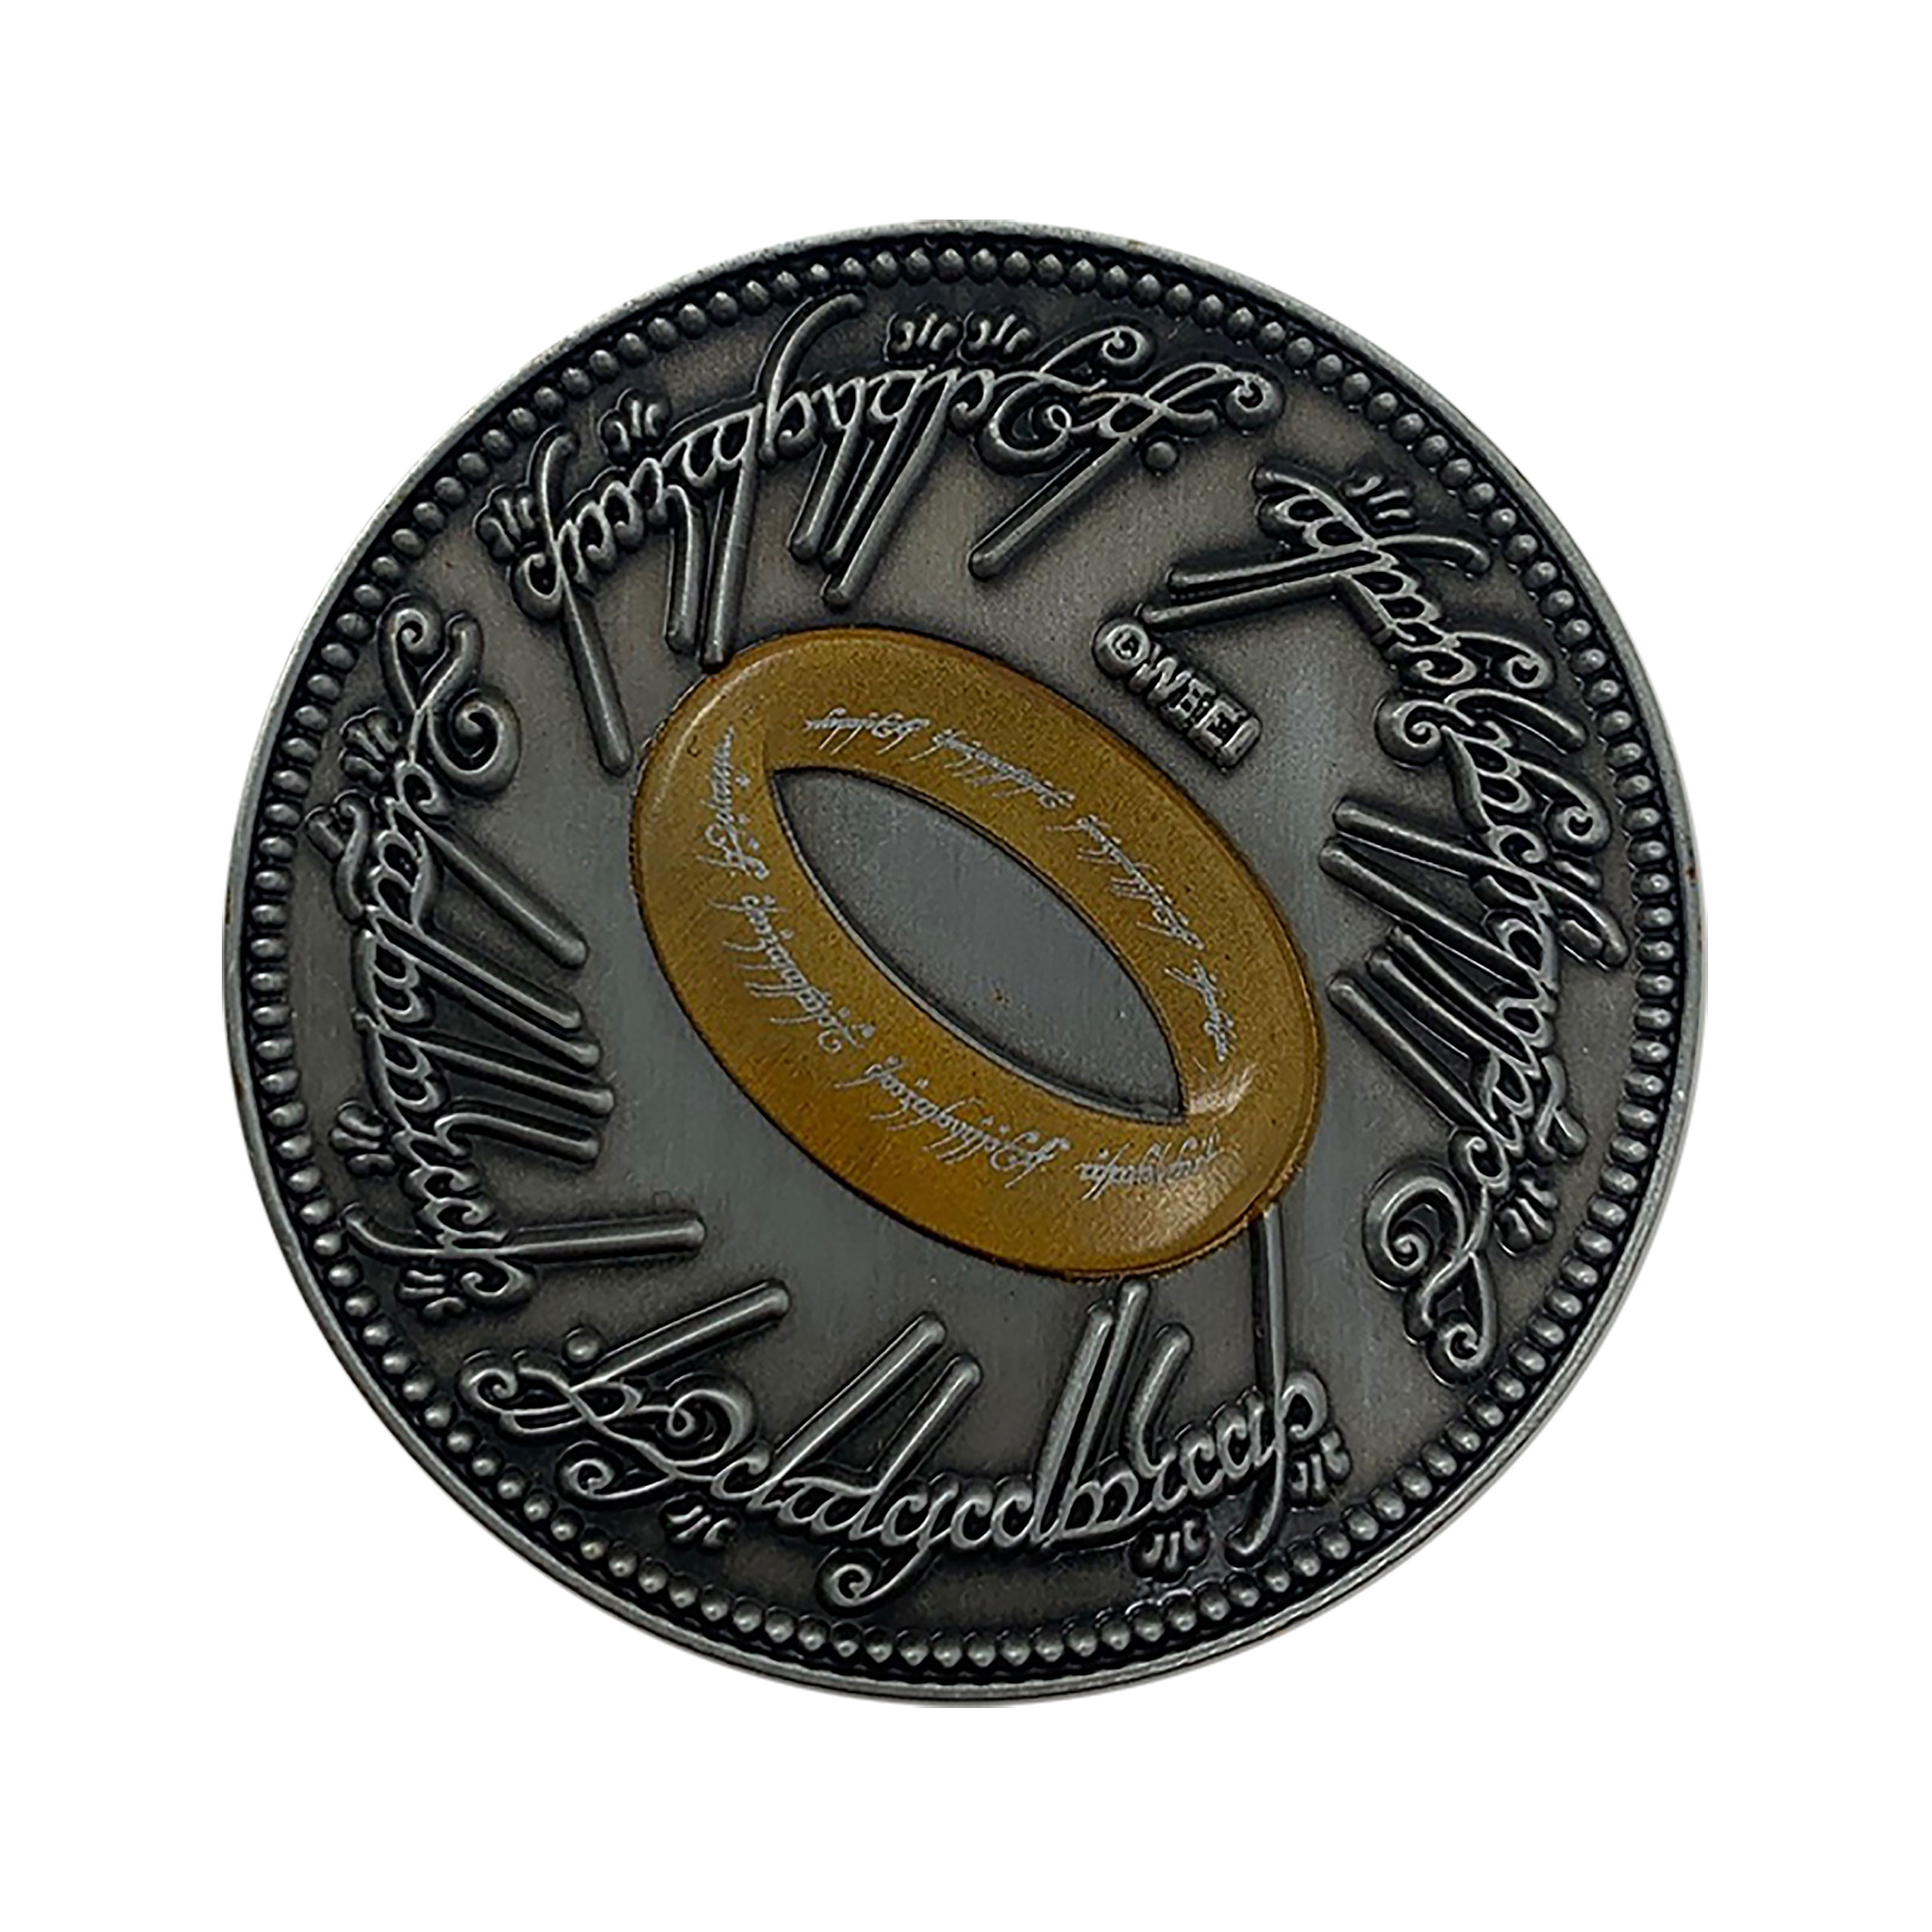 Herr der Ringe - Gollum Sammlermünze